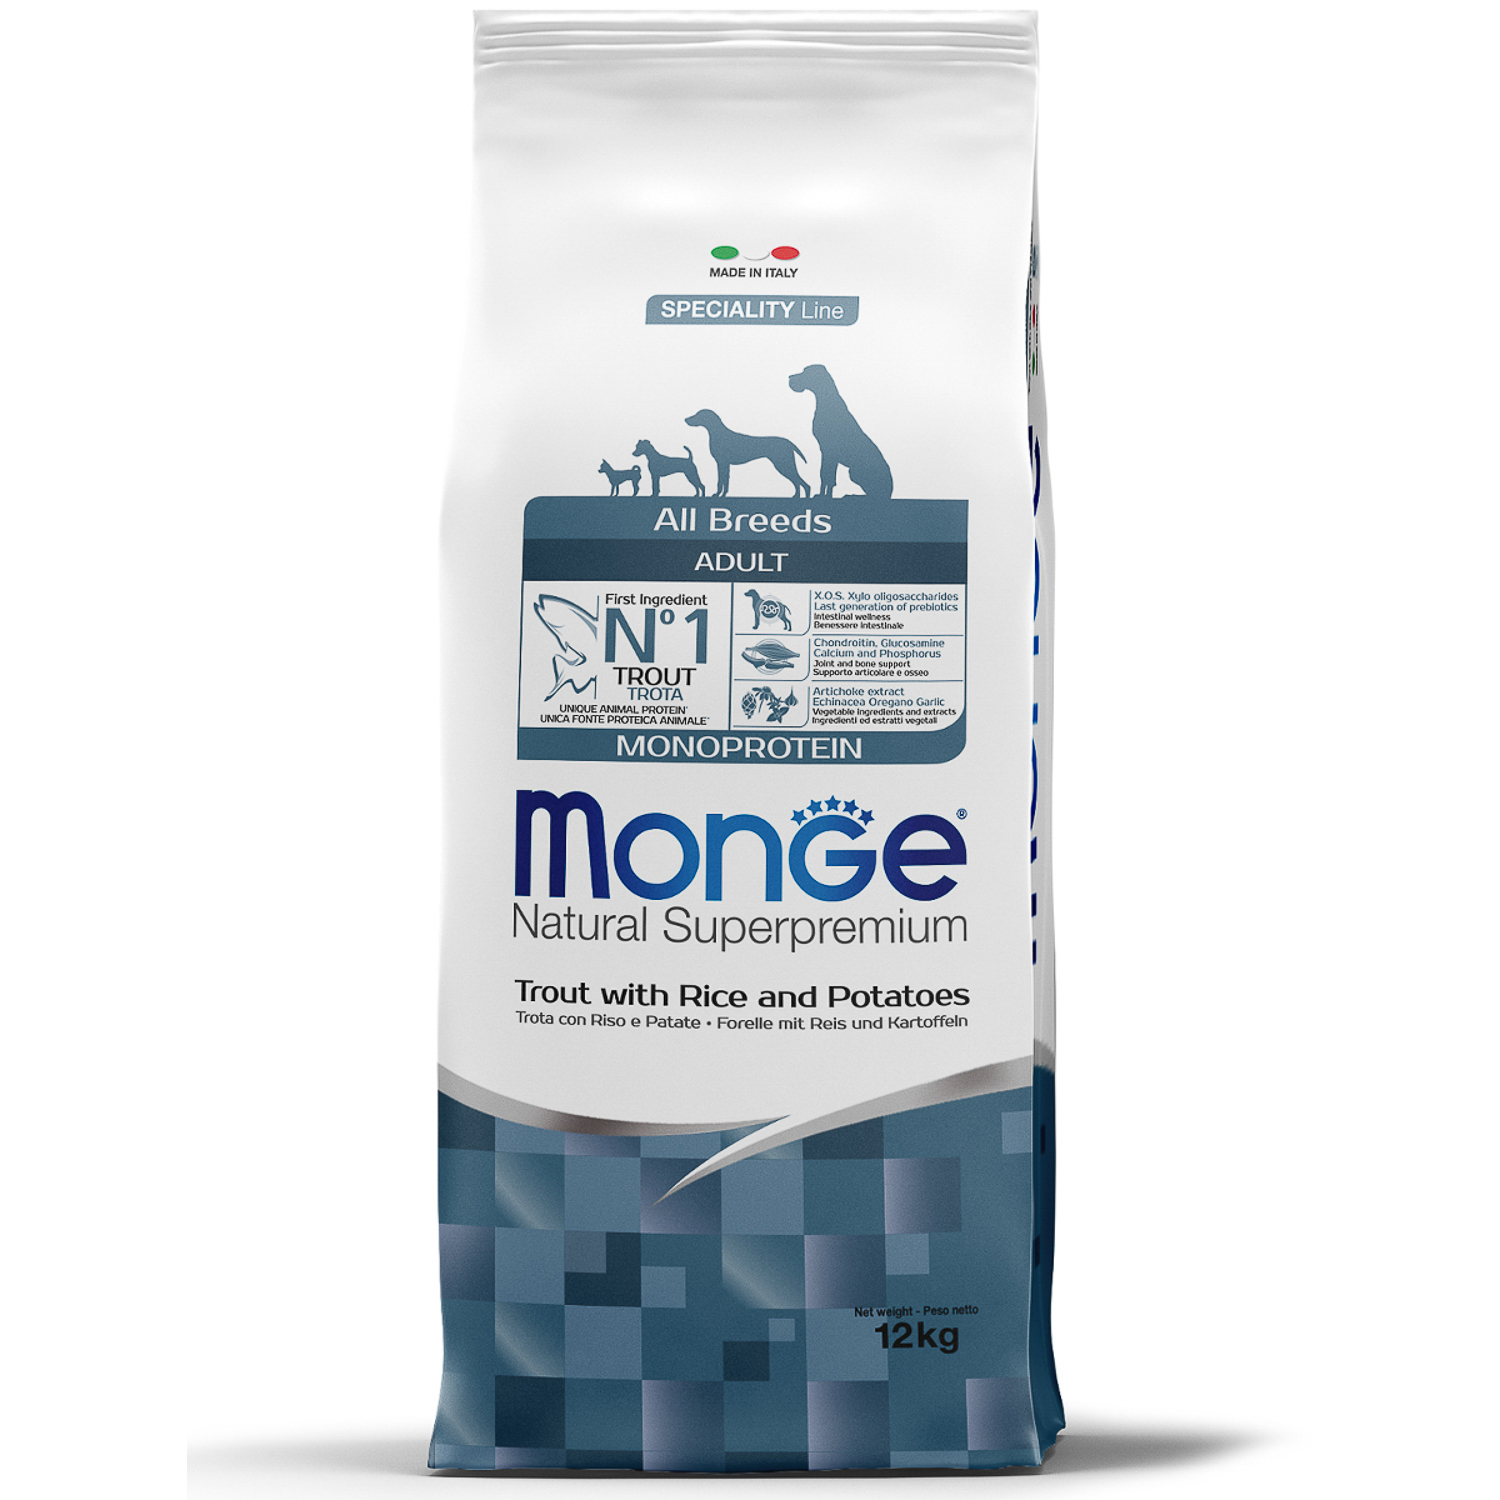 Monge Dog Monoprotein корм для собак всех пород форель с рисом и картофелем 12 кг зоомагазине gavgav-market